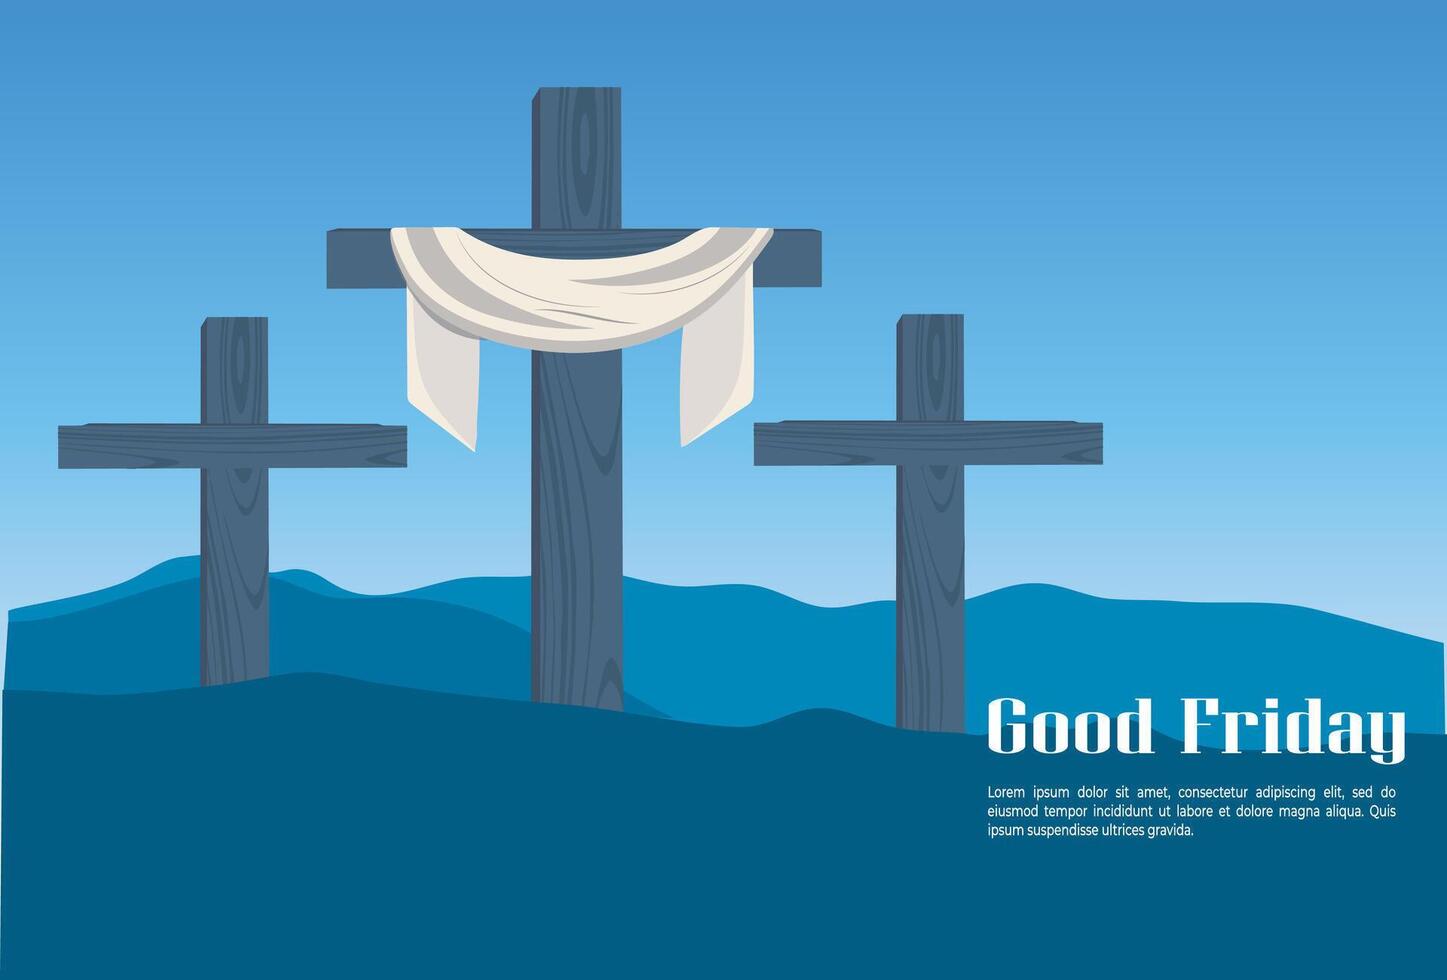 Jesus cristão Boa Sexta-feira evento ilustração social meios de comunicação postar vetor